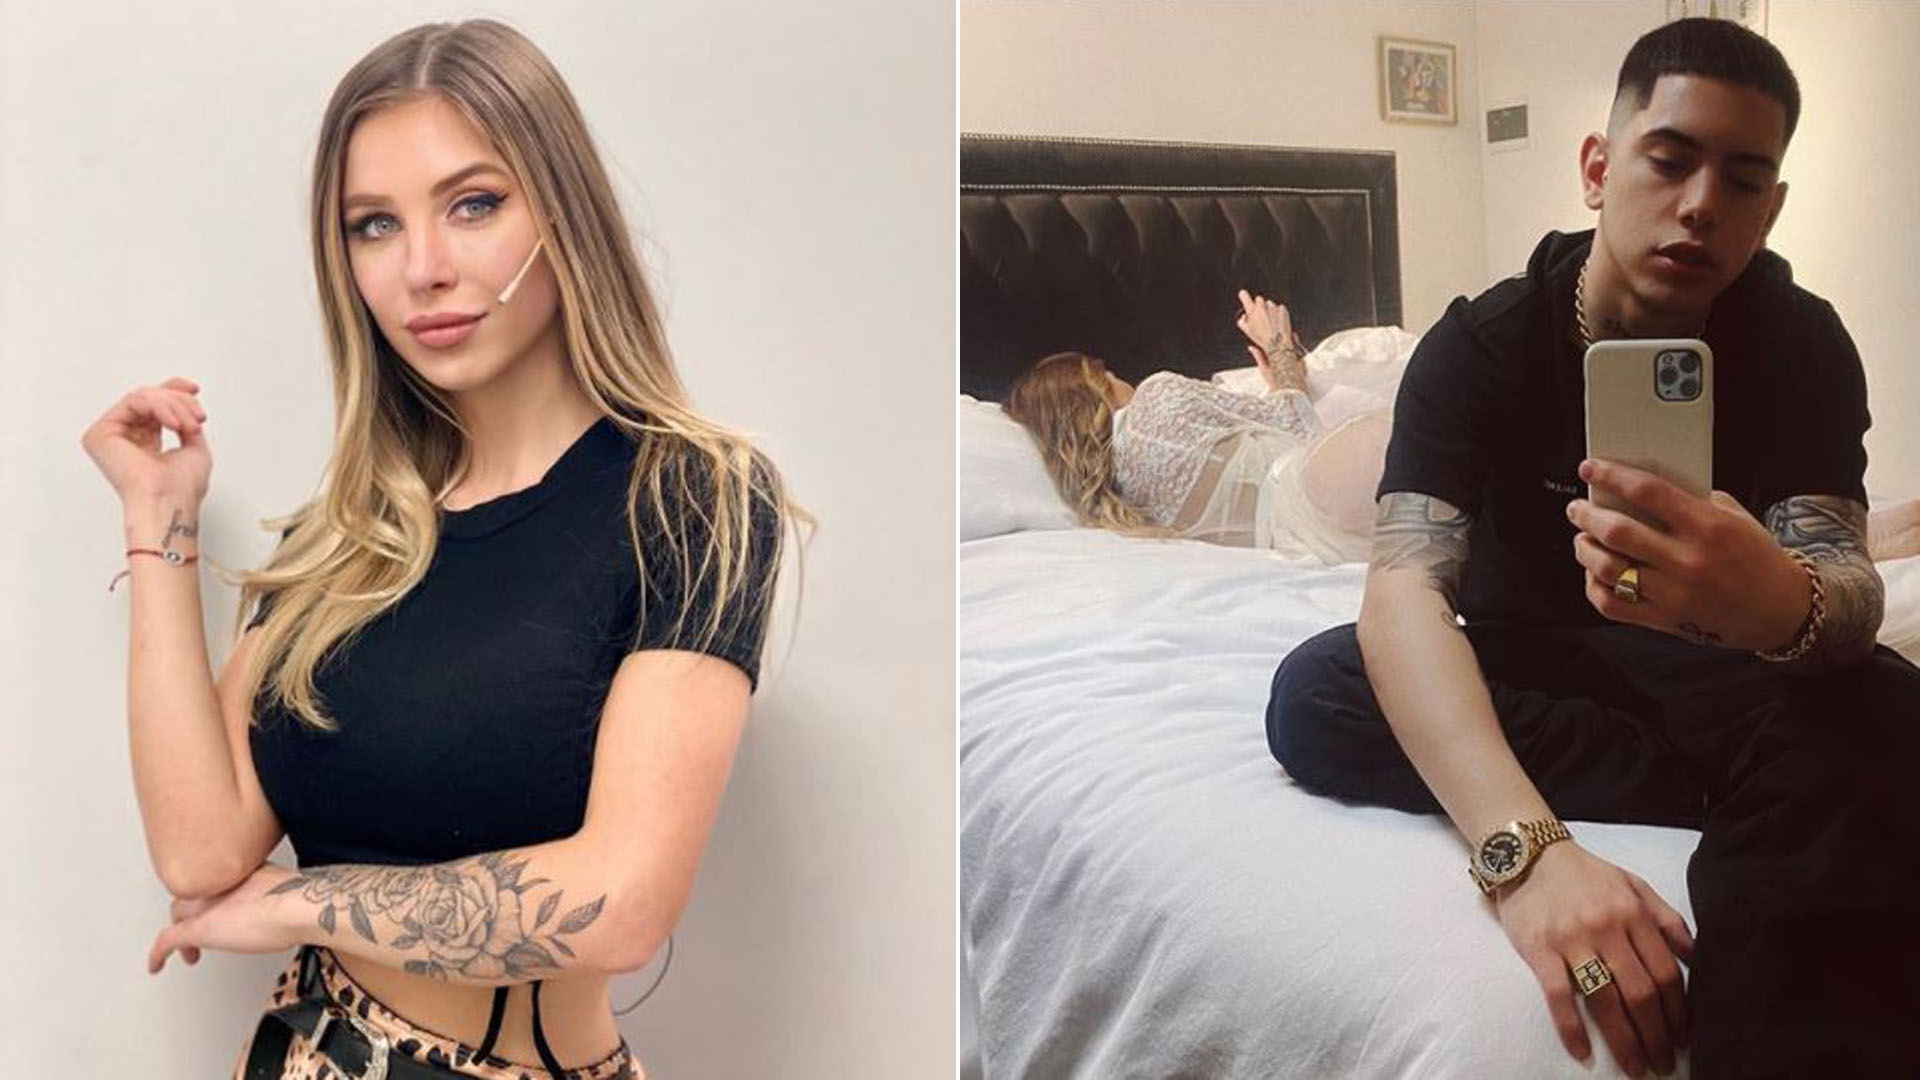 Se develó el misterio: qué hay detrás de la foto de Romina Malaspina con el rapero Ecko en la cama